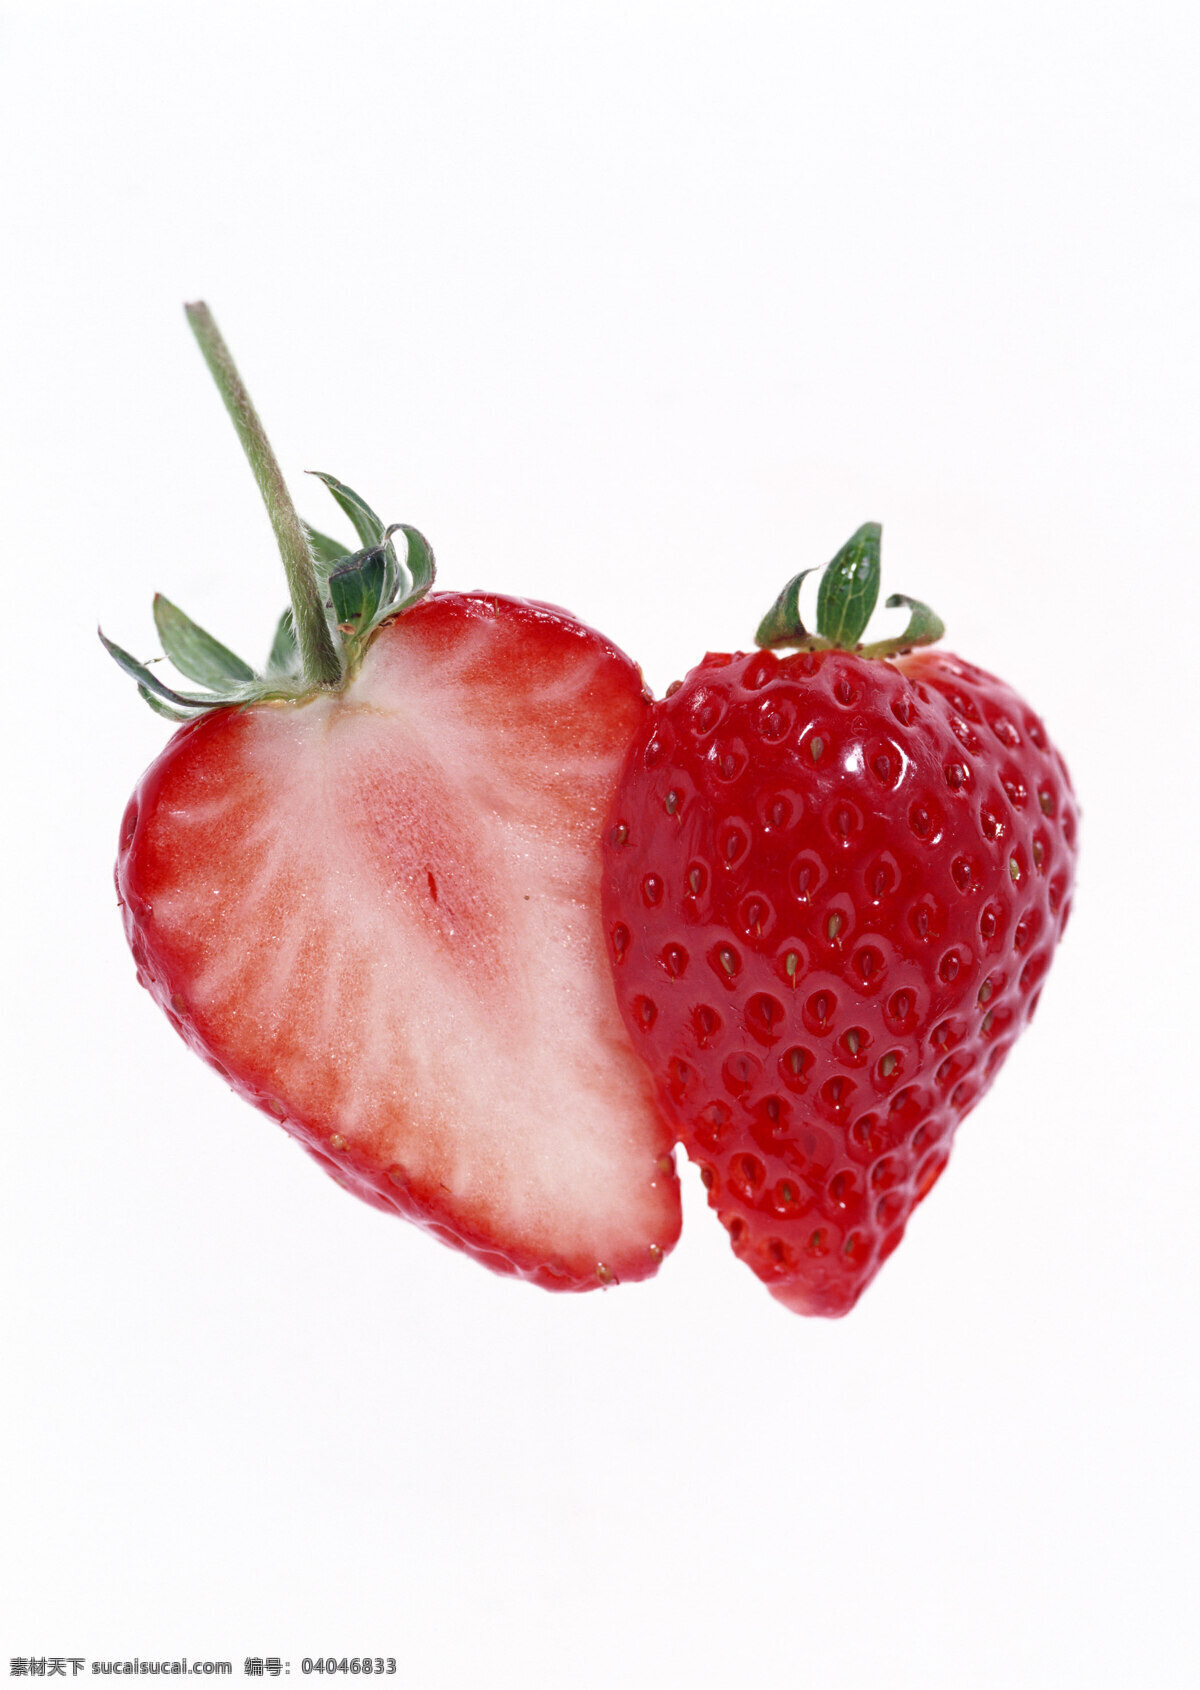 草莓 高清 草霉 切片 摄影图 水果 特写 微距 新鲜 高精度图